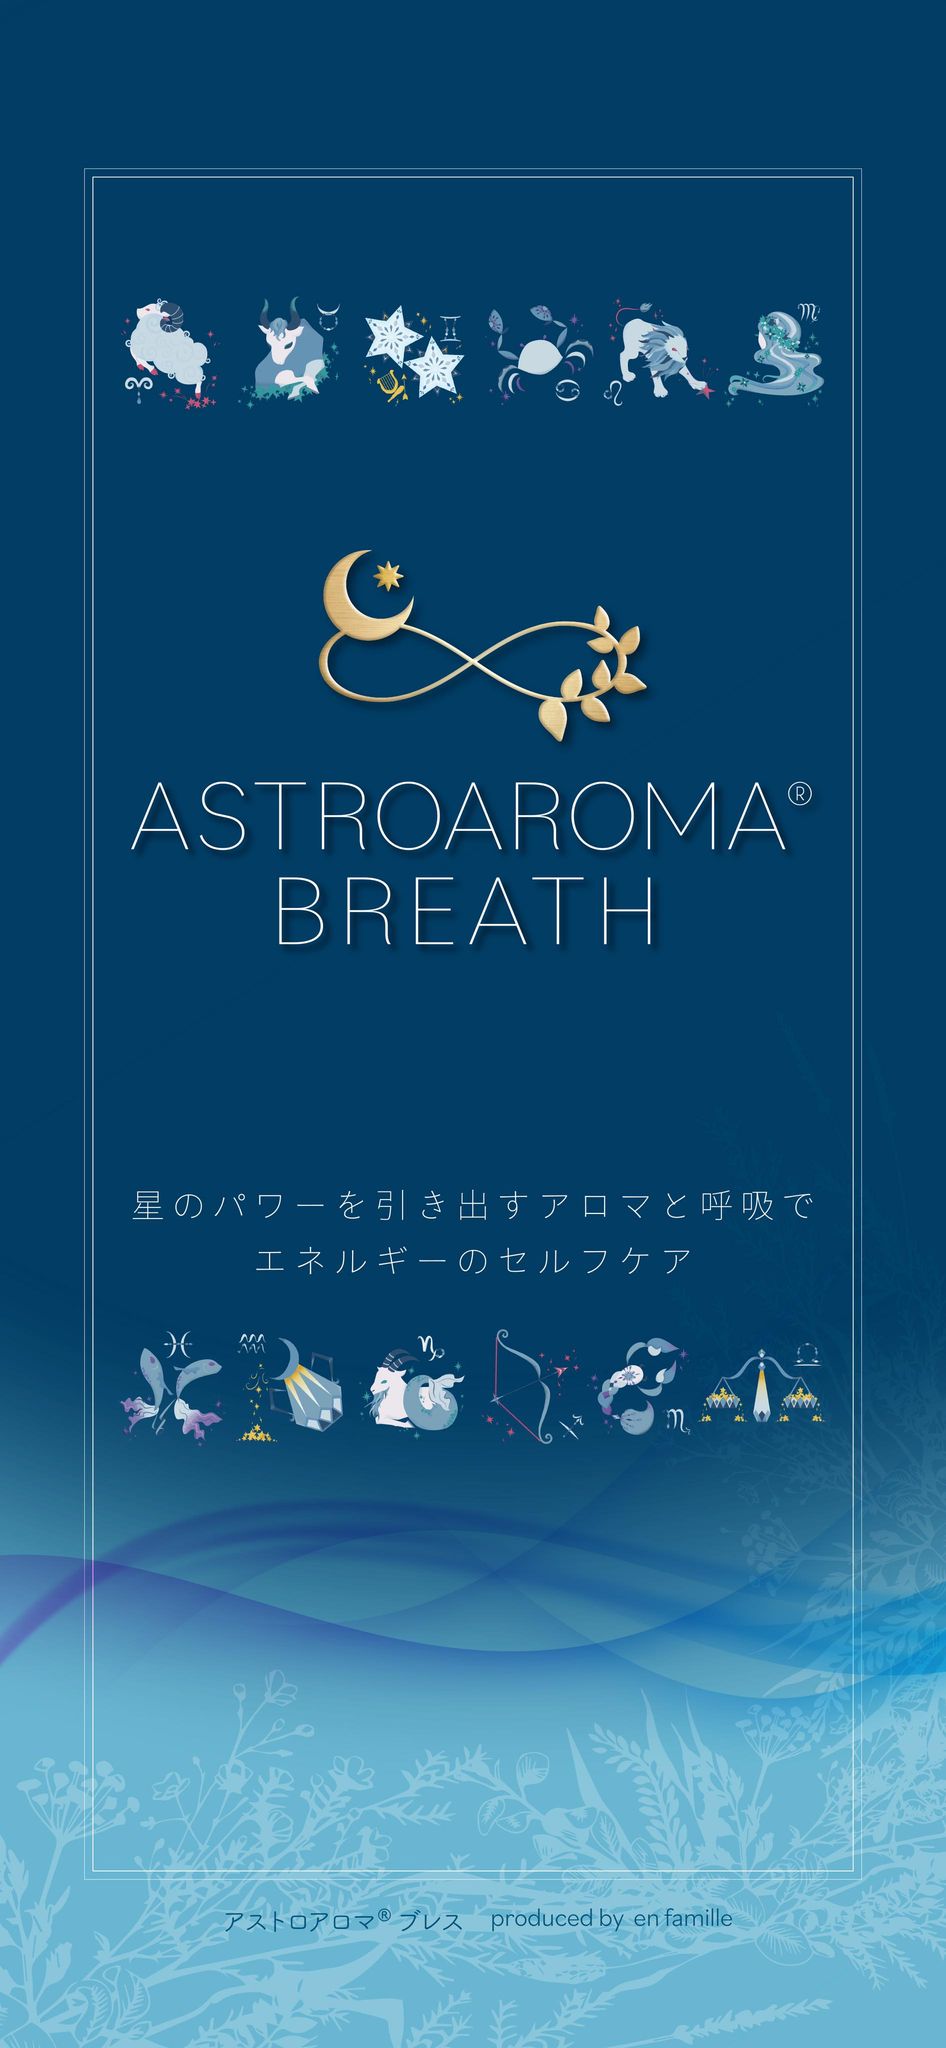 ASTROAROMA BREATH